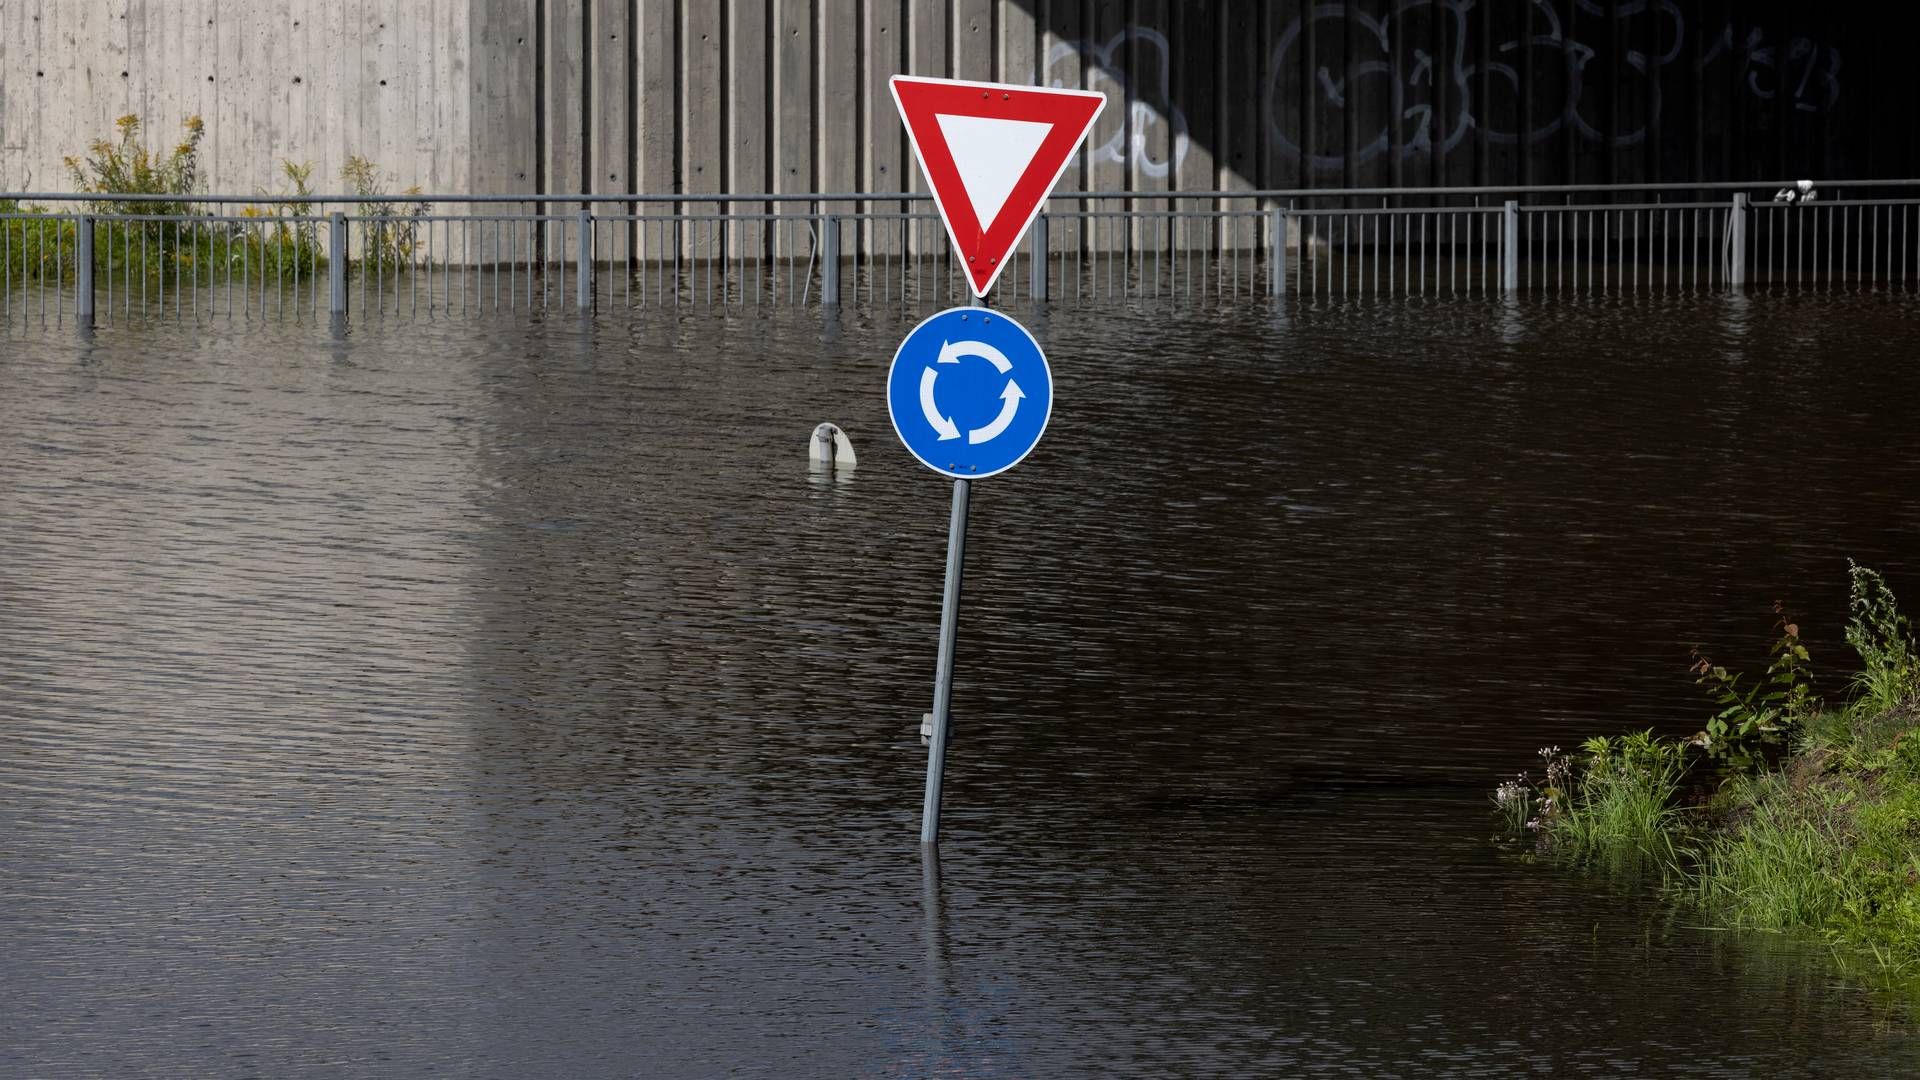 Flensted, 20 kilometer vest for Aarhus, var tirsdag ramt af 70 millimeter regn. Normalt falder der 83 millimeter regn i Danmark i hele oktober. | Foto: Jacob Ehrbahn